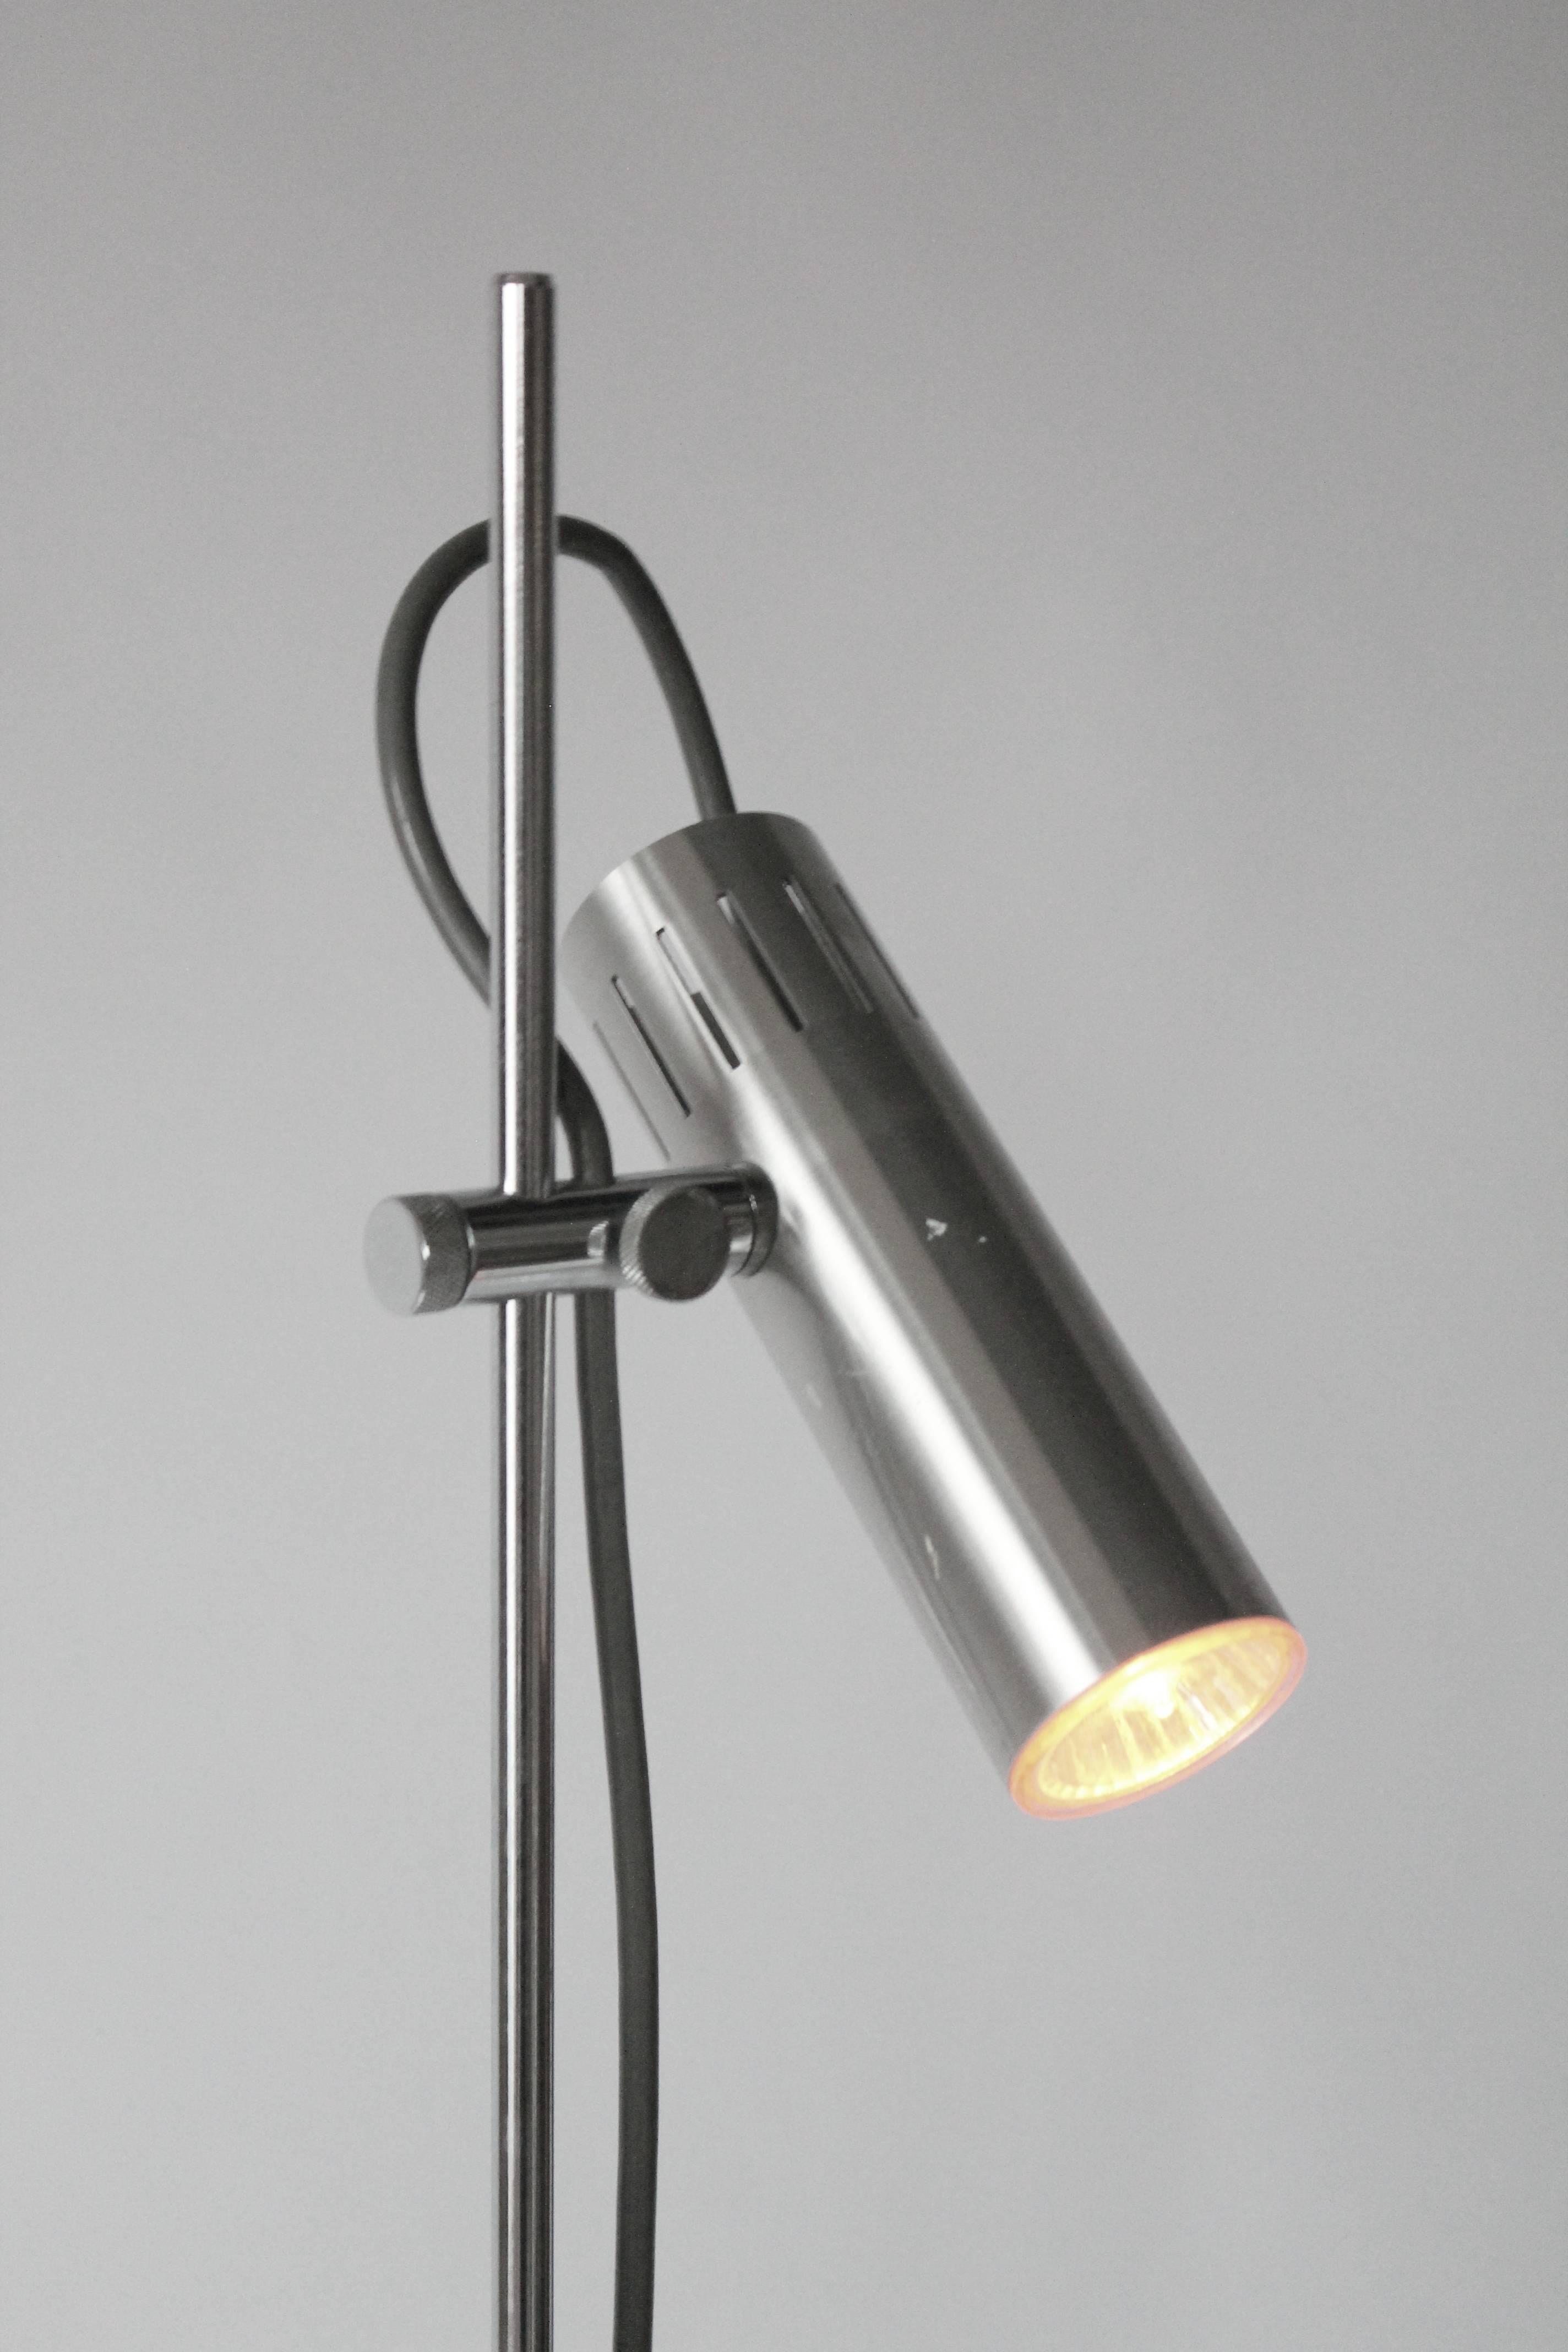 Aluminum Alain Richard A14 by Disderot Twin Shade Chromed Floor Lamp, 1959, France